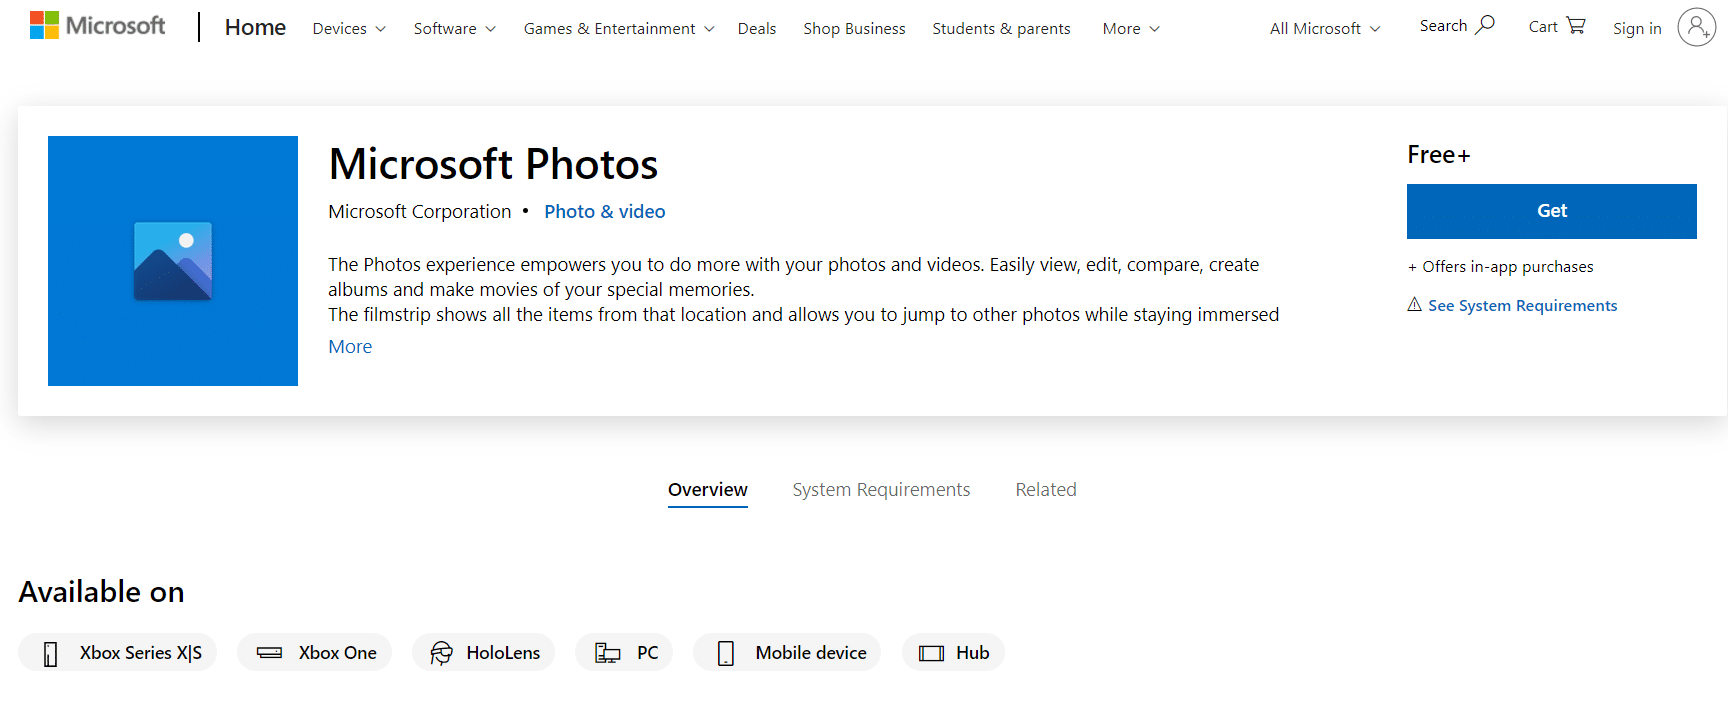 Ứng dụng Microsoft Photos |  phần mềm chỉnh sửa ảnh miễn phí cho máy tính